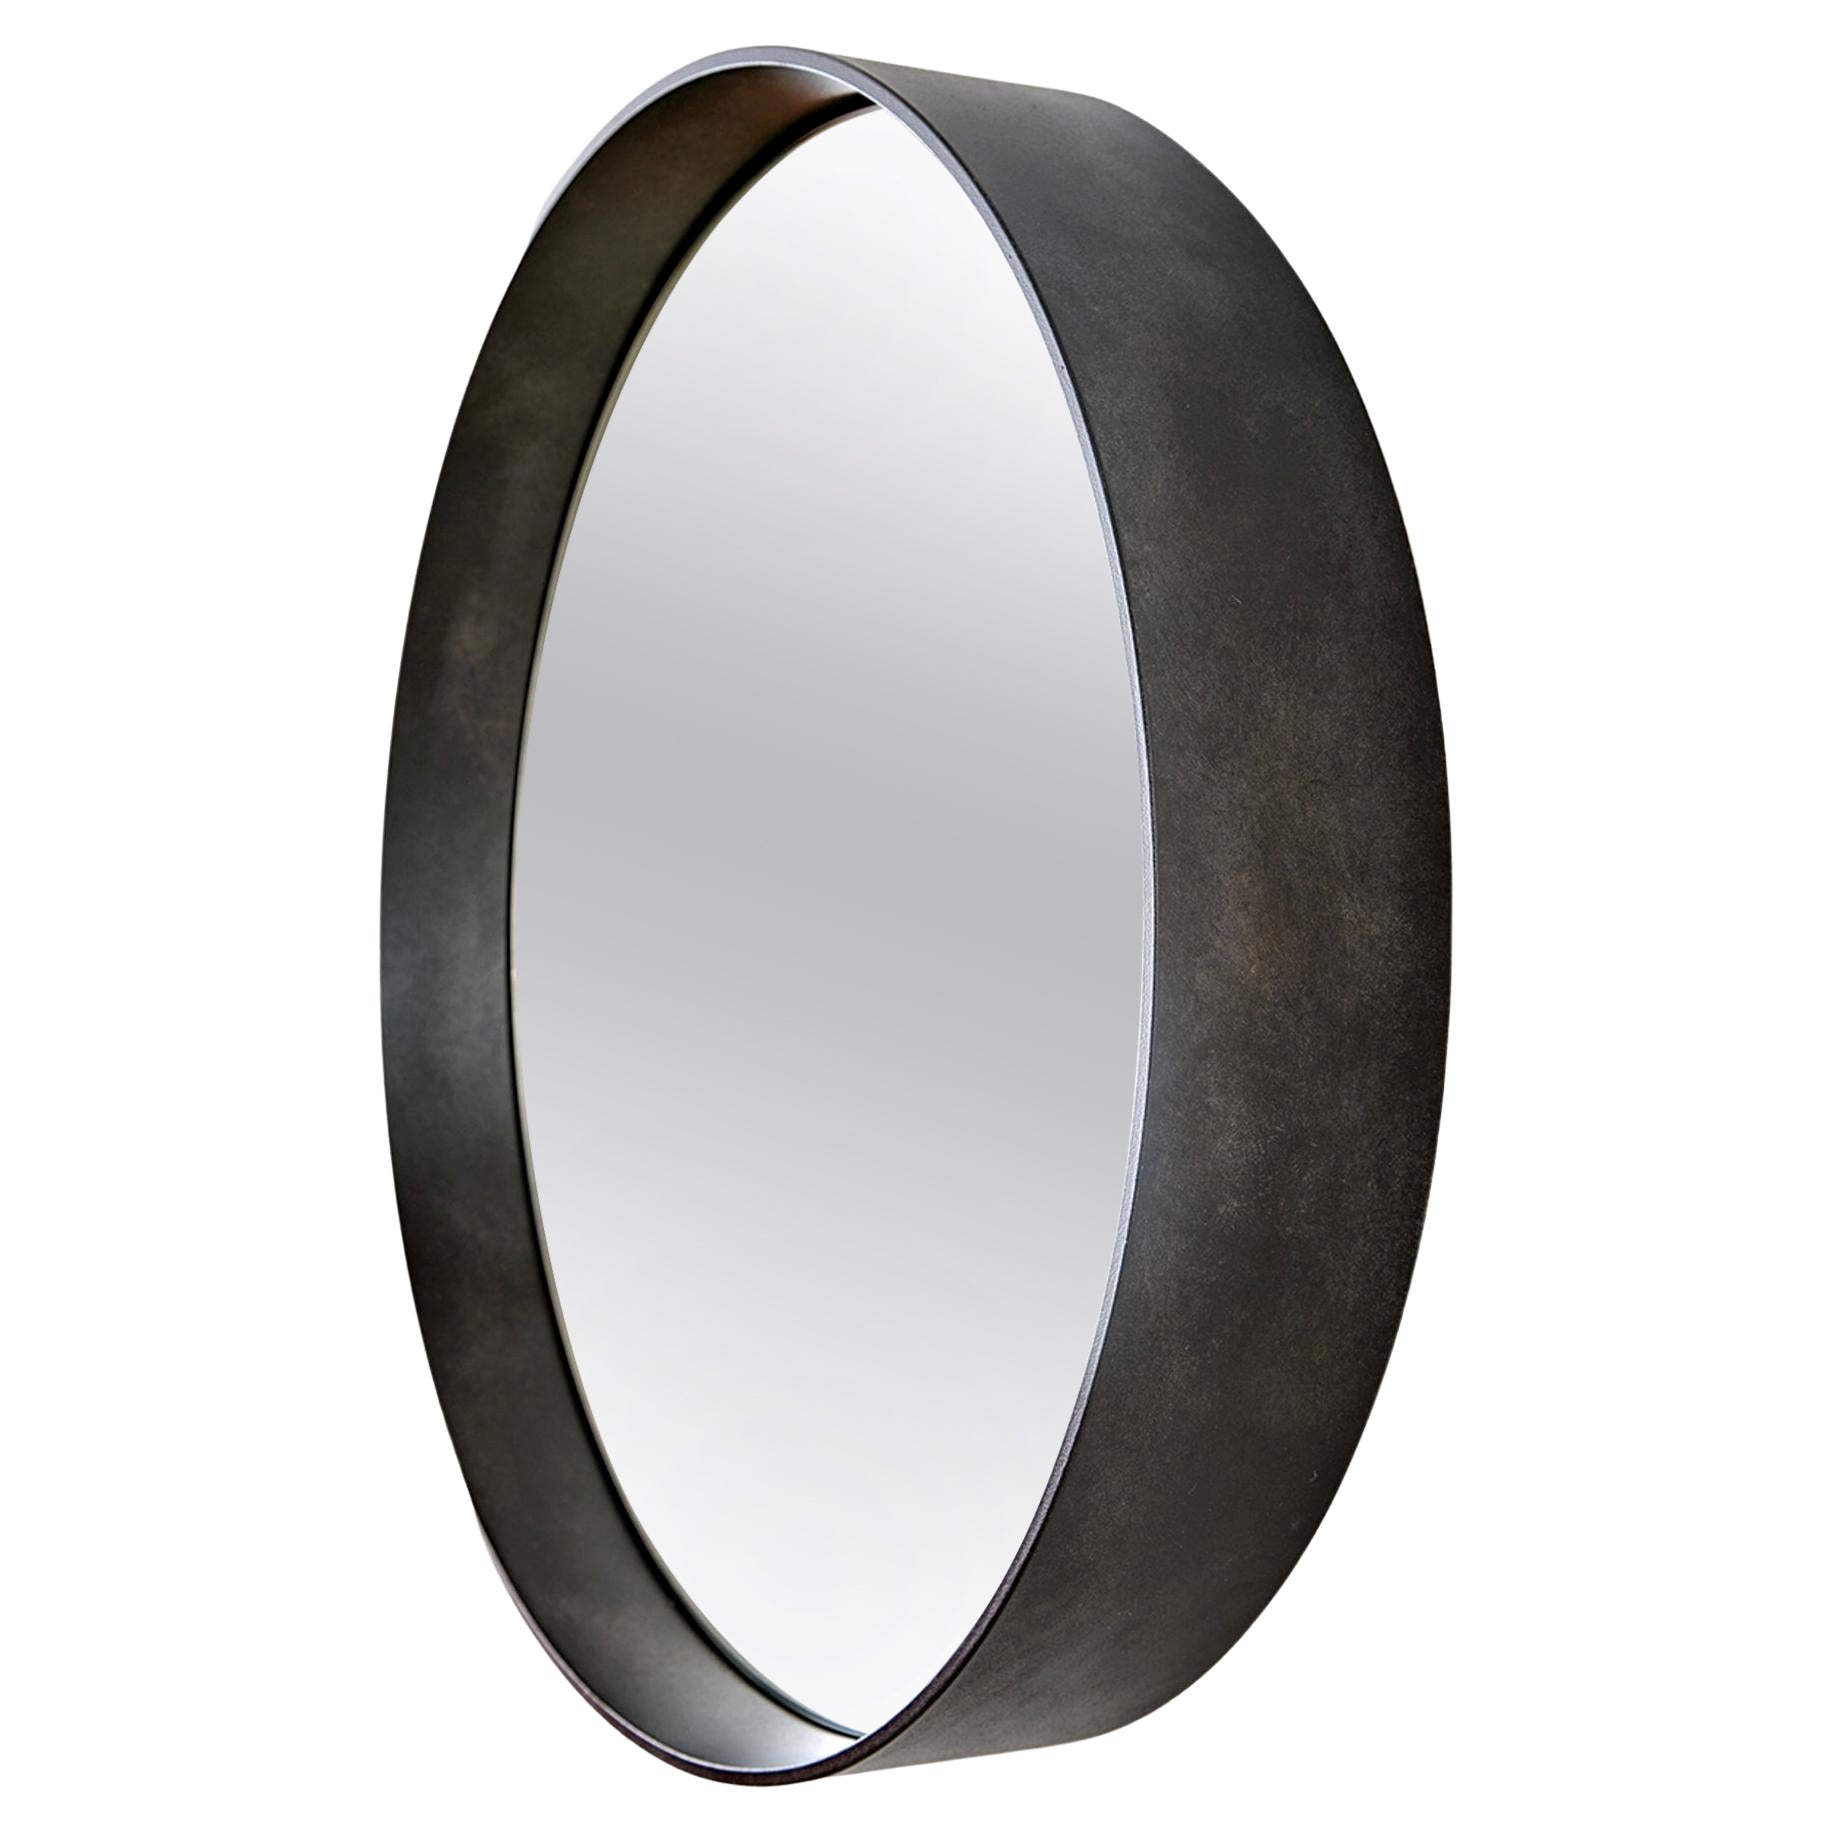 Dorian Round Gray Mirror 